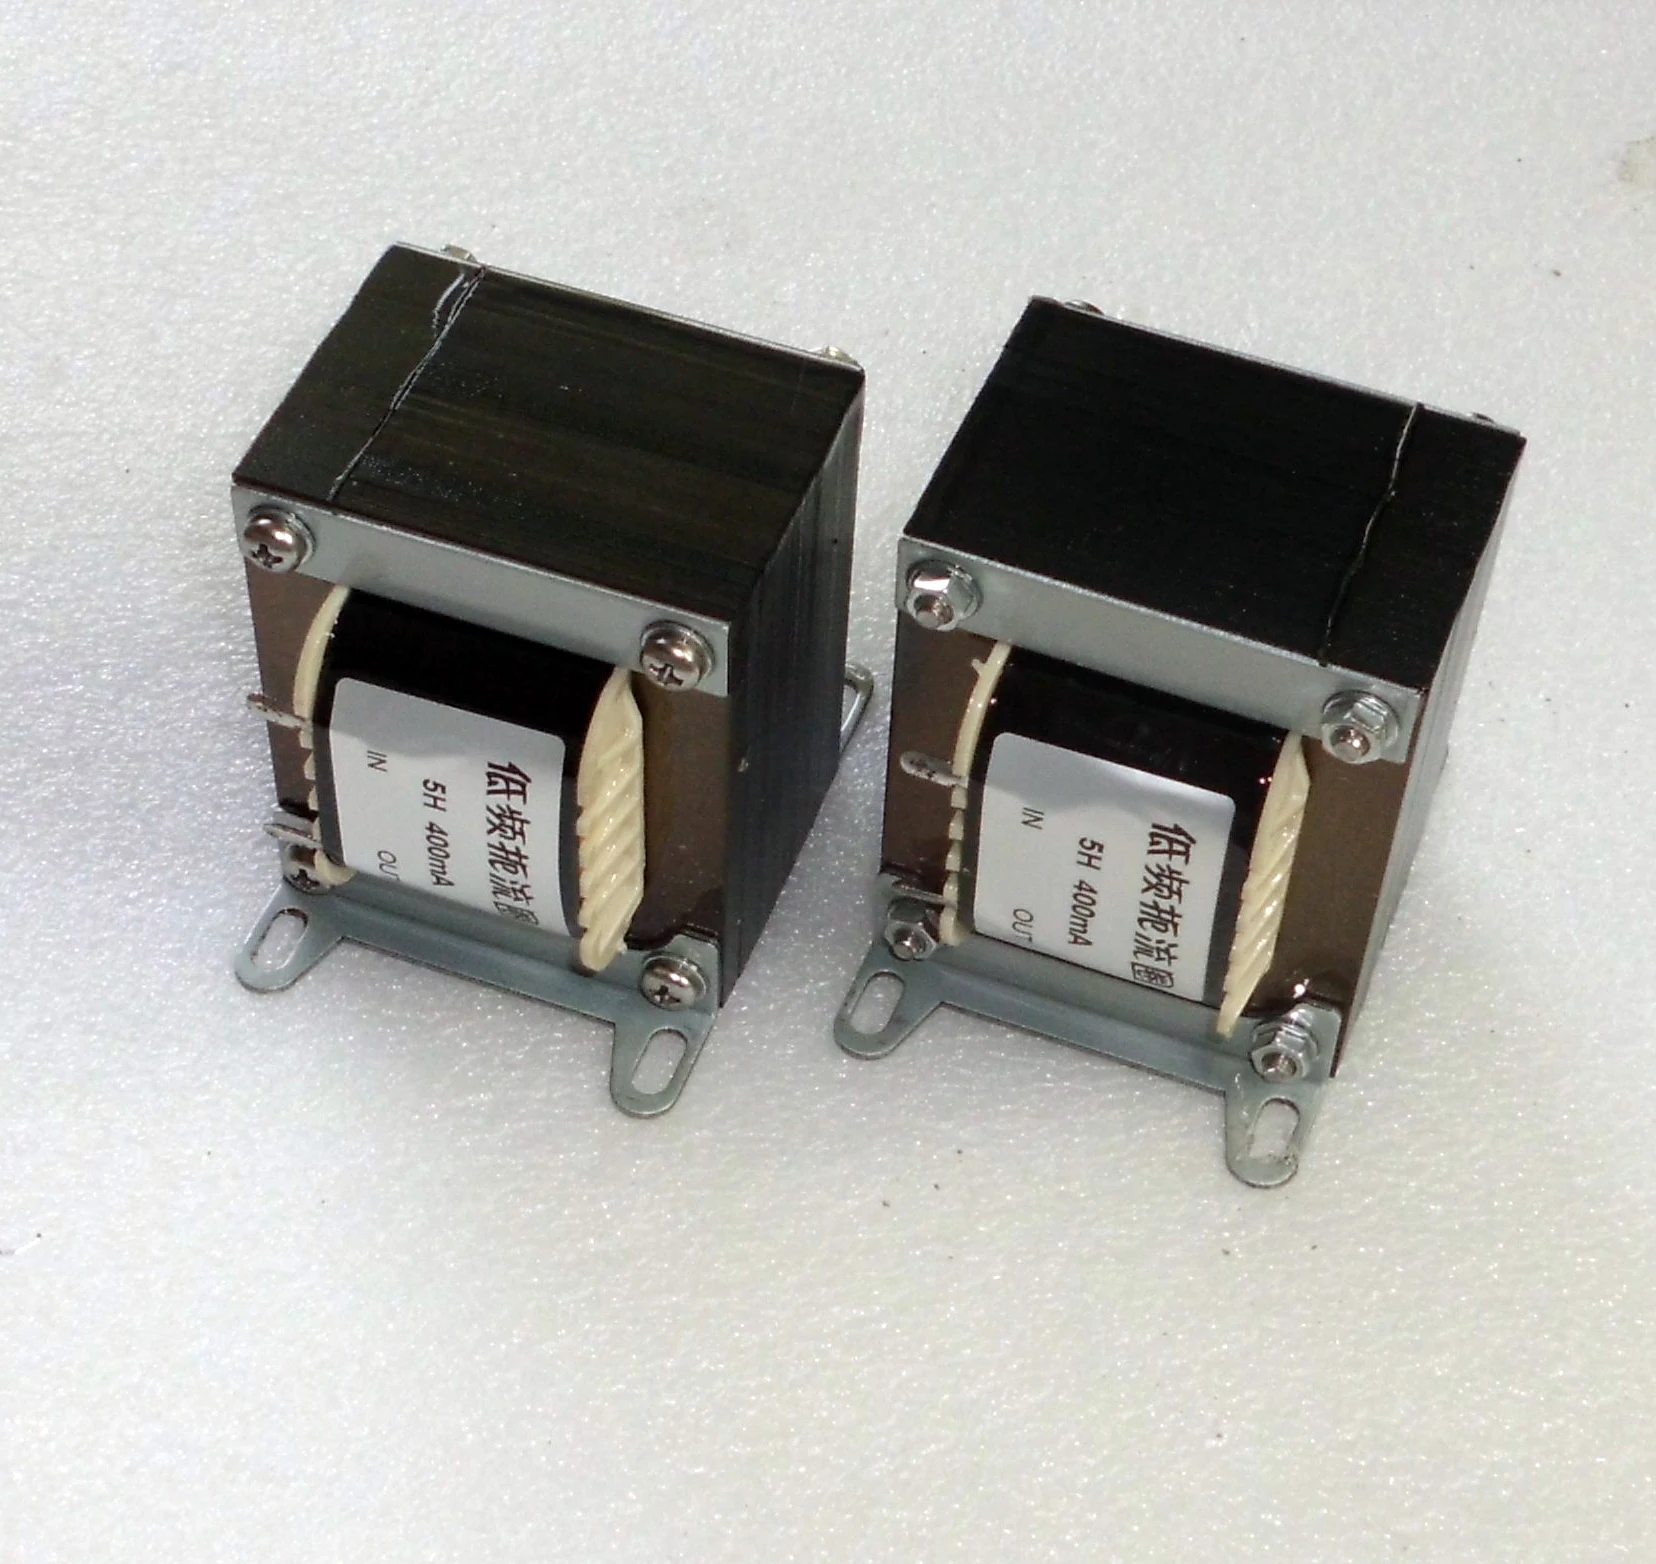 Zündvorrichtung Für Natrium-und Metalhalogenna Lampe ZX 400 4.5 A 3-5 kv 